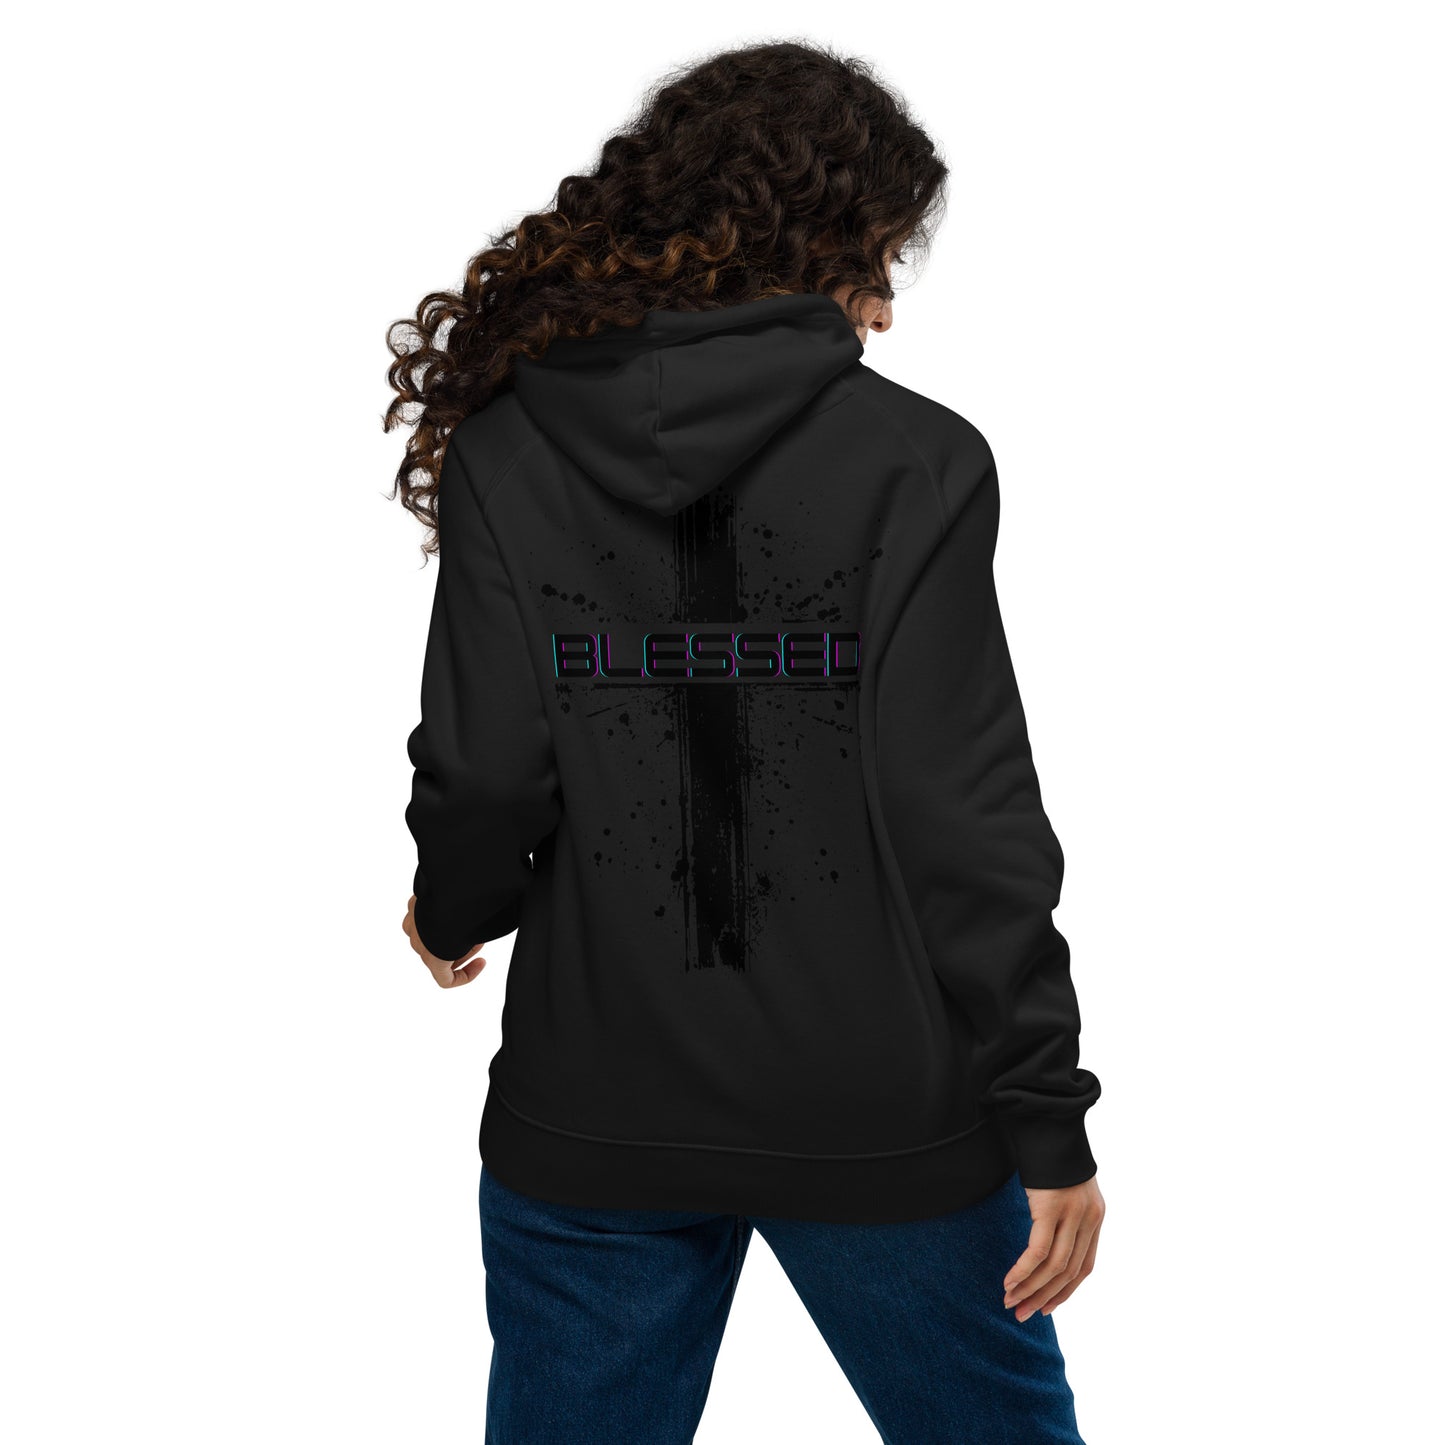 Blessed black  cross Unisex eco raglan hoodie